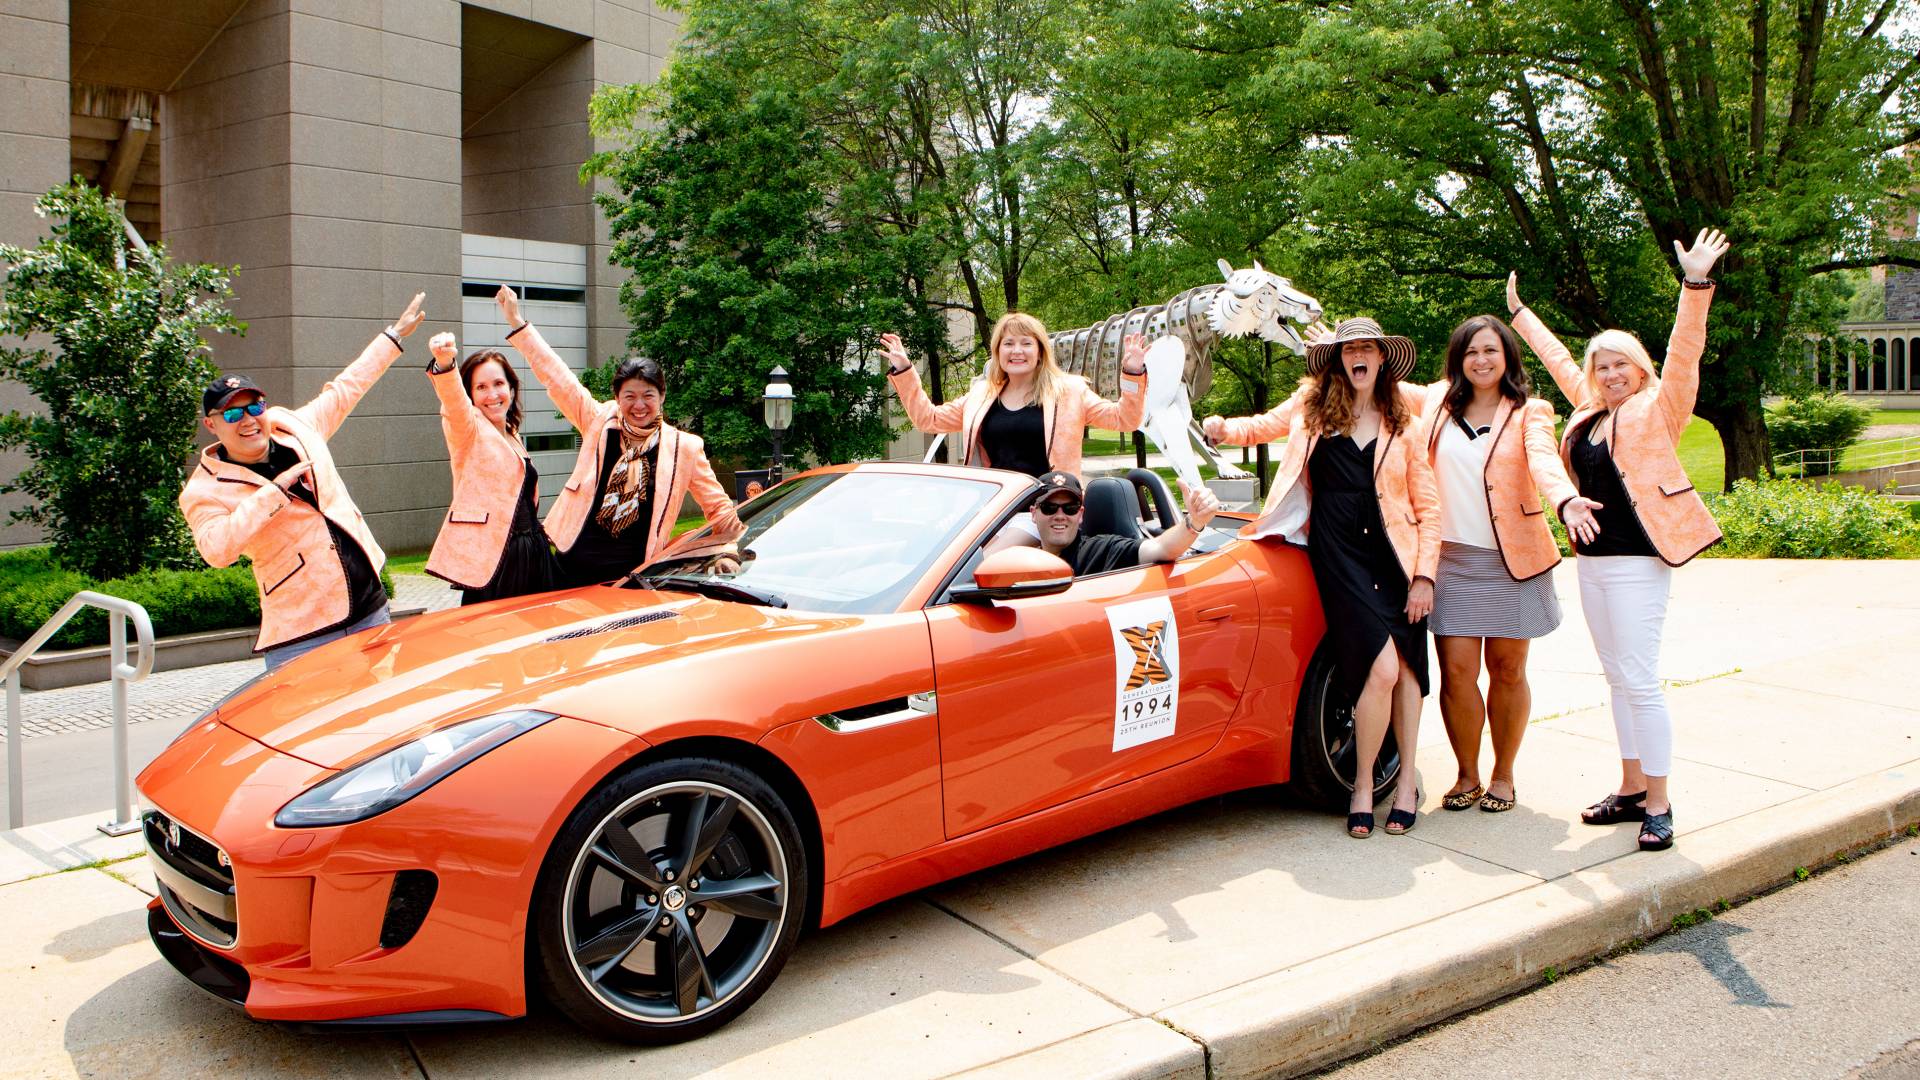 Alumni gather around an orange Jaguar car